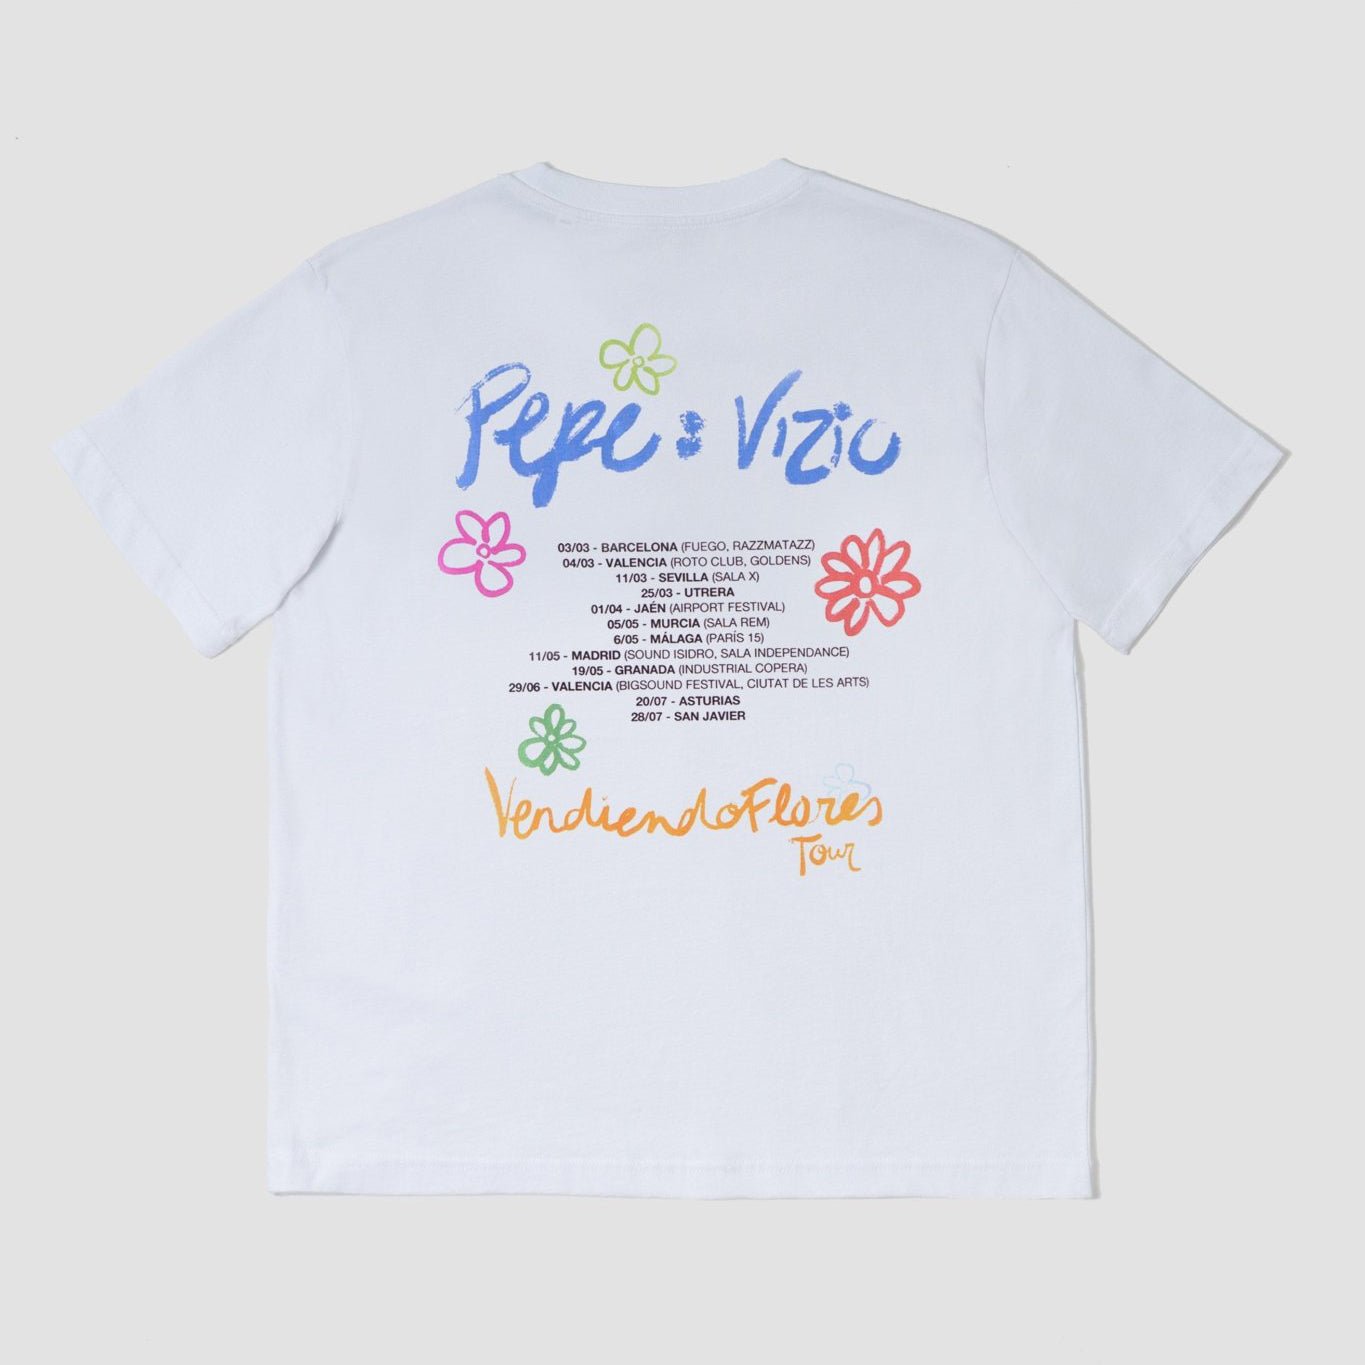 Pepe:Vizio, Camiseta Vendiendo Flores Tour